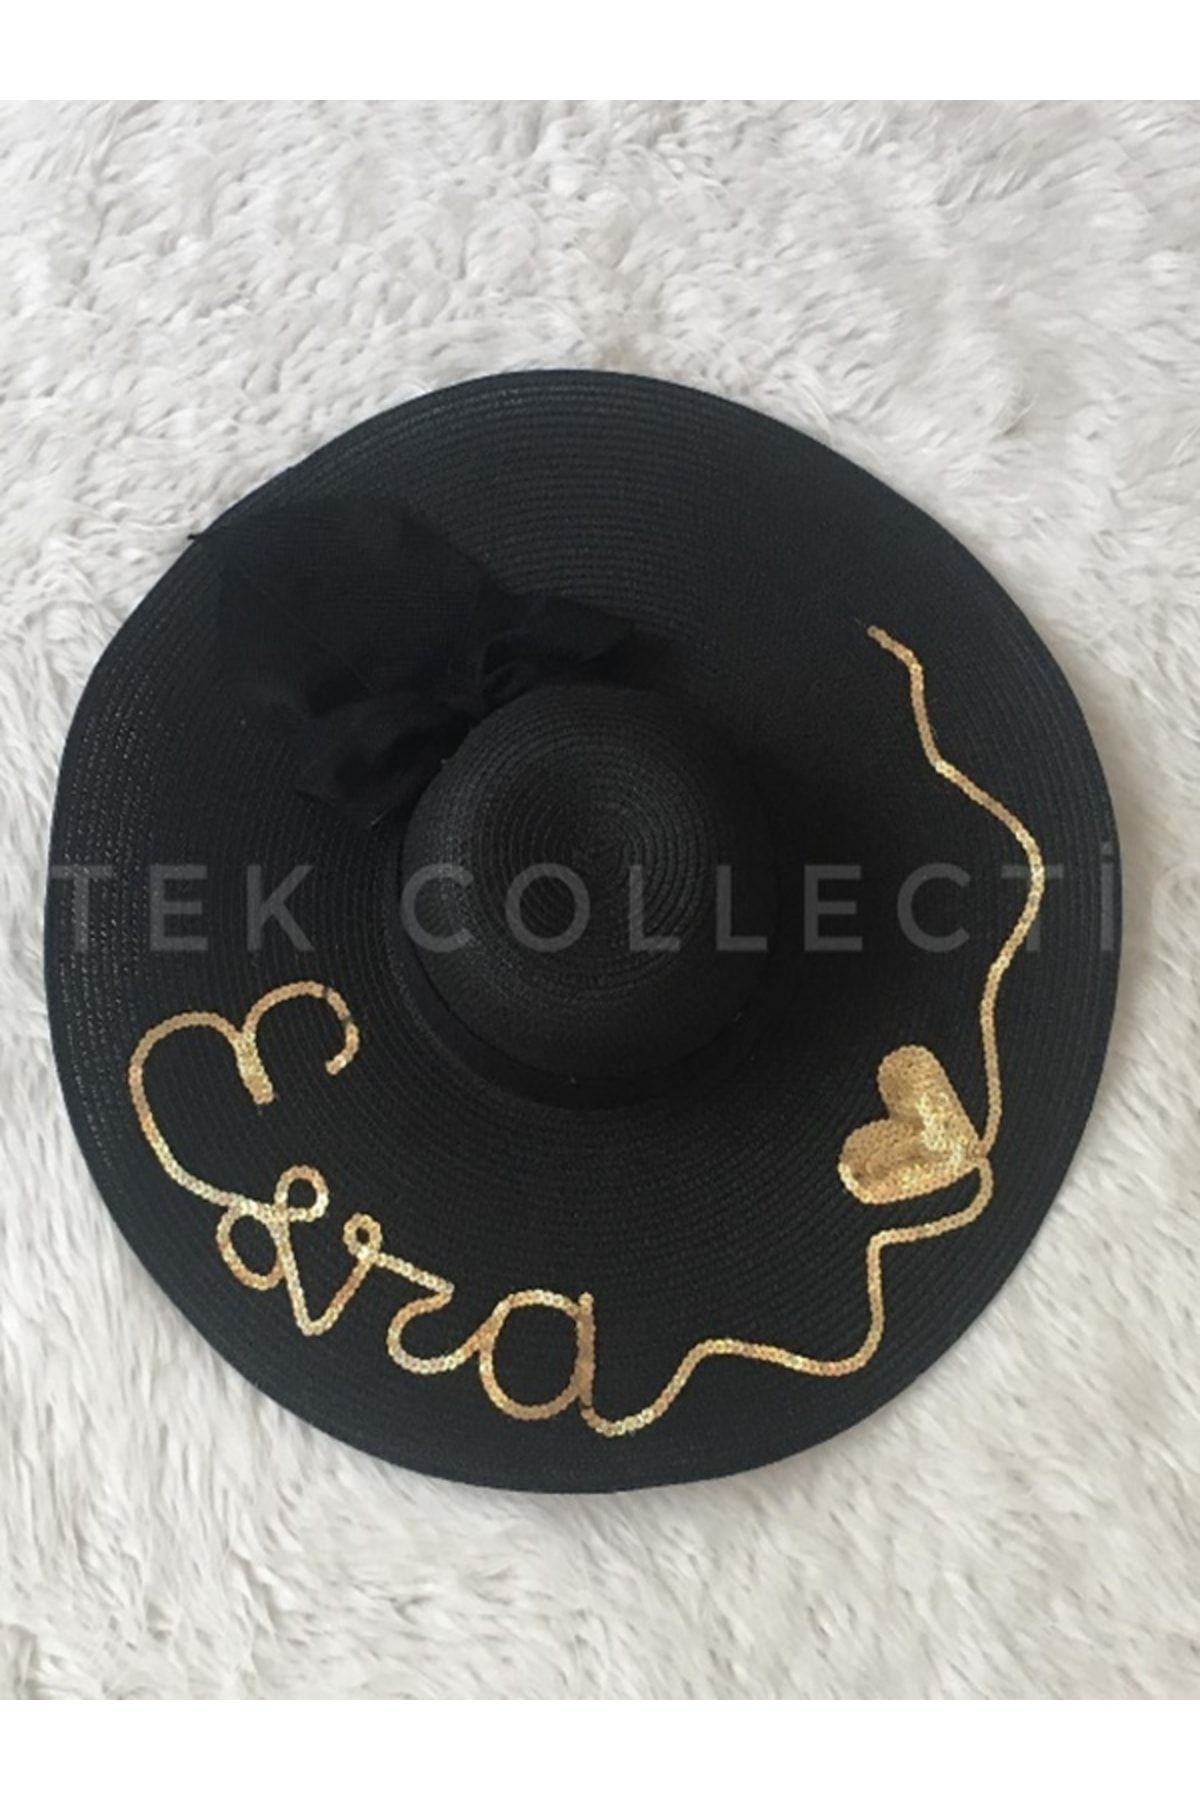 Petek Collection Kişiye Özel Yazılı Yetişkin Siyah Hası Şapka (YAZILACAK YAZIYI SORU KISMINA BELİRTİNİZ)